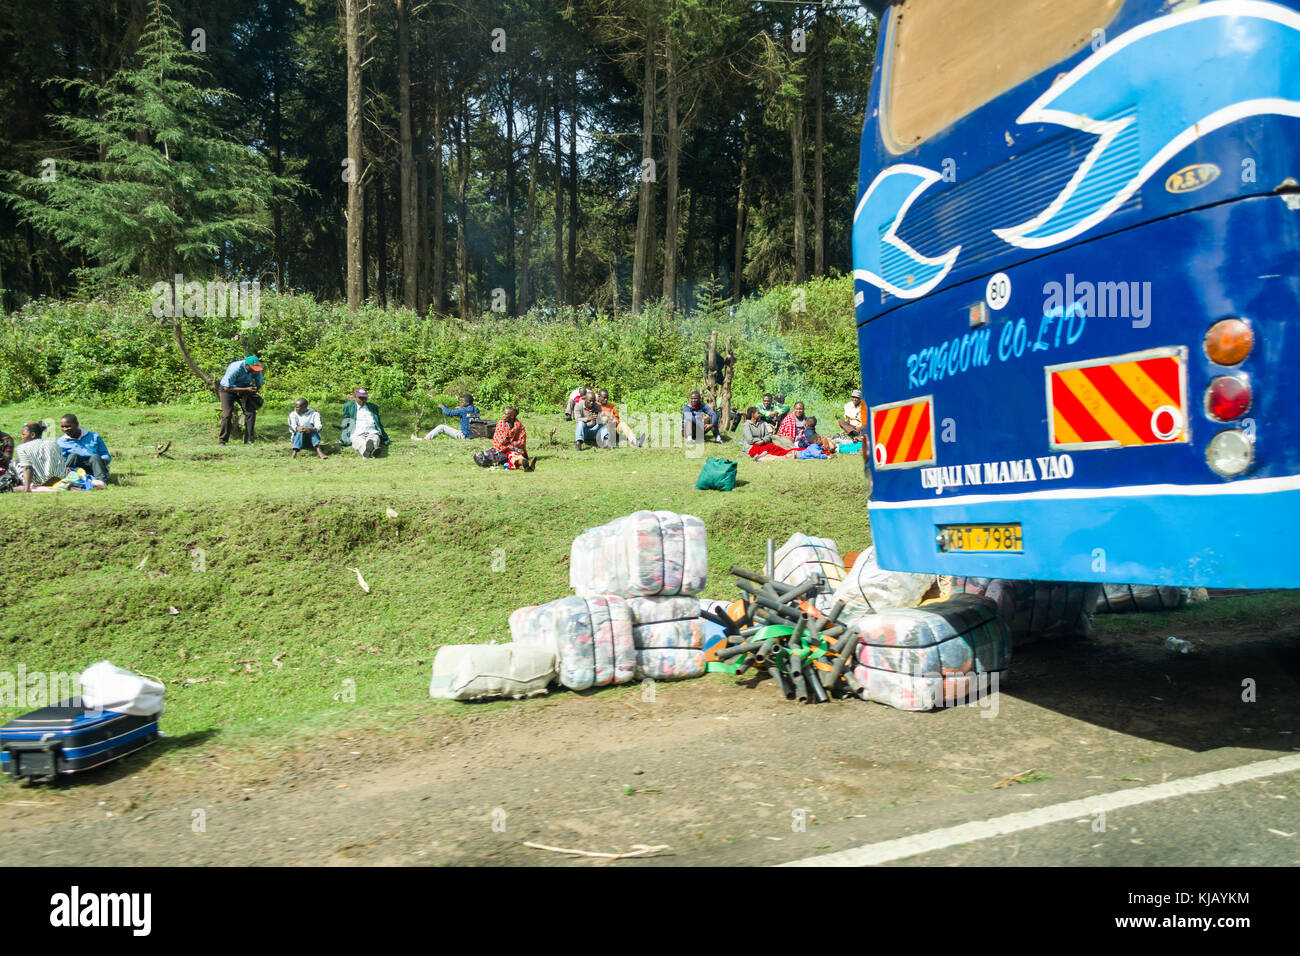 I passeggeri provenienti da ripartiti autobus sedersi sul ciglio della strada in attesa che il veicolo possa essere fissato, Kenya, Africa orientale Foto Stock